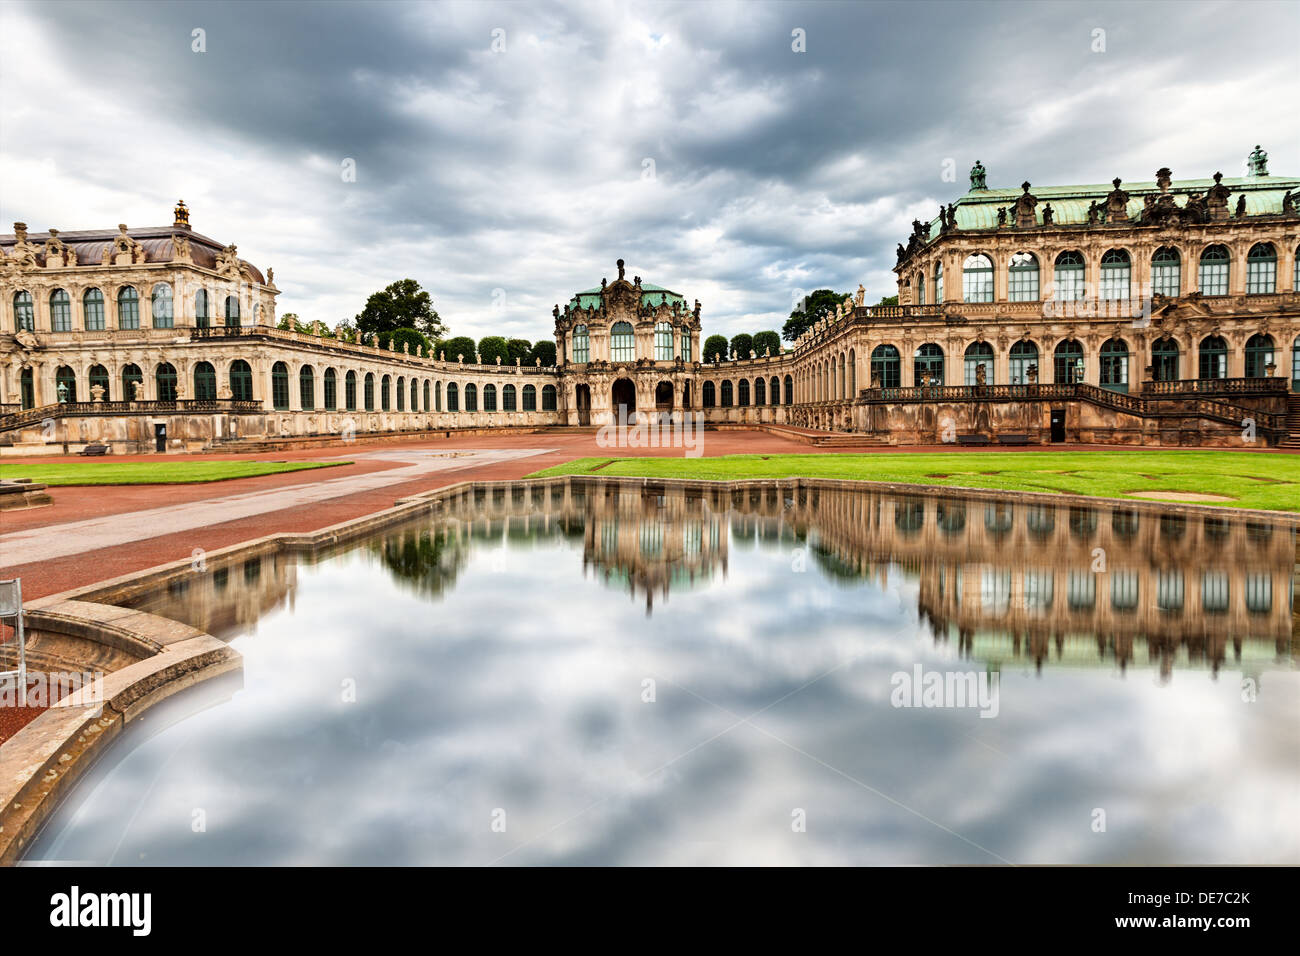 Der Hof der Zwinger in Dresden, Deutschland. Stockfoto